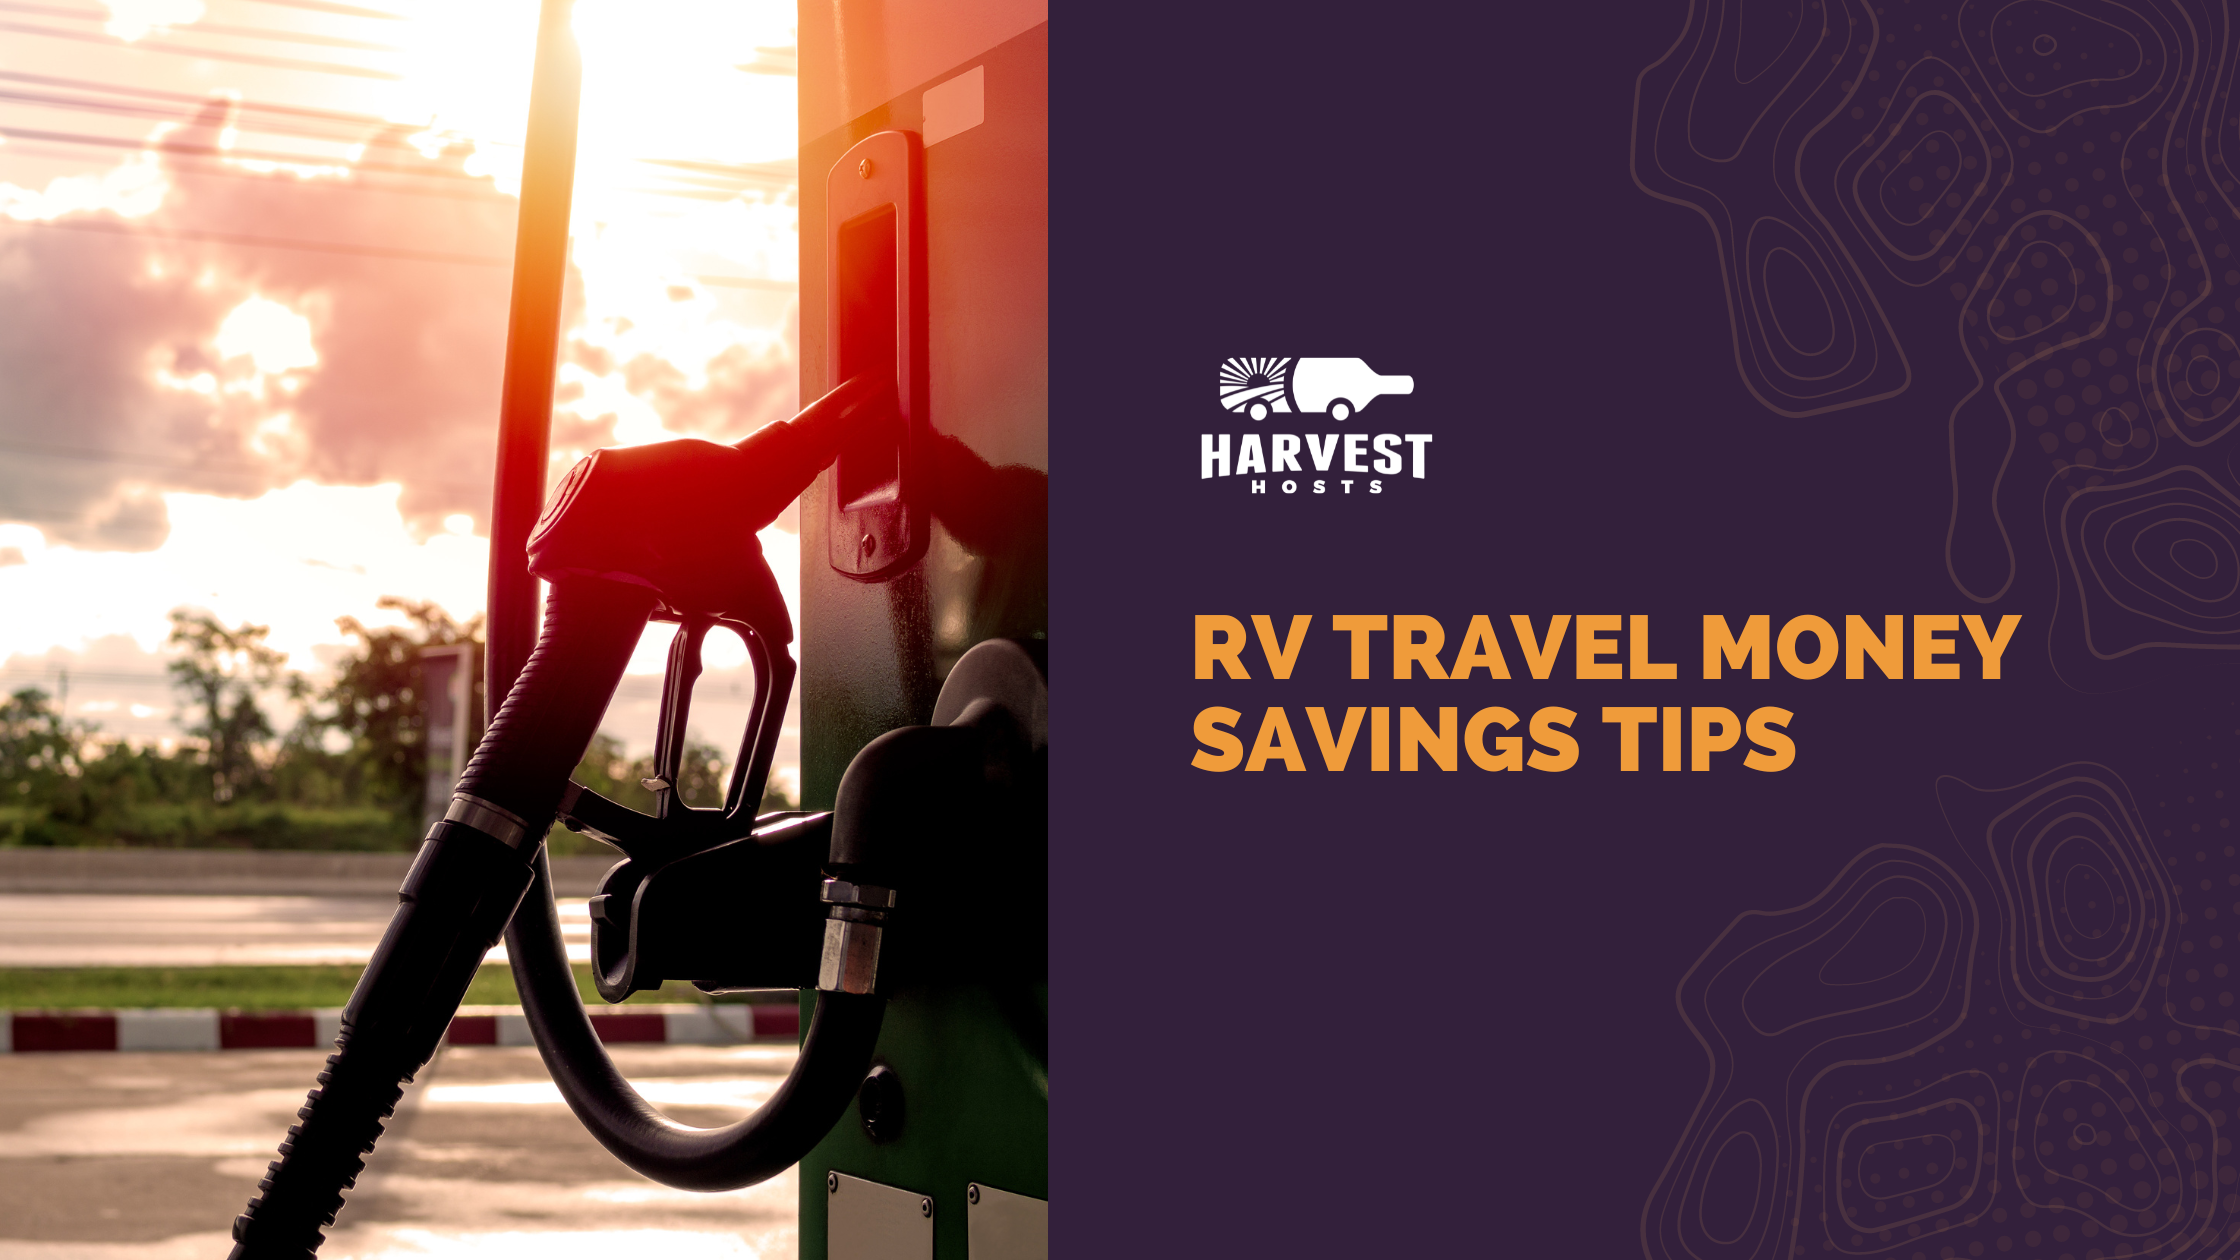 6 Practical Money Saving Tips for RV Travel